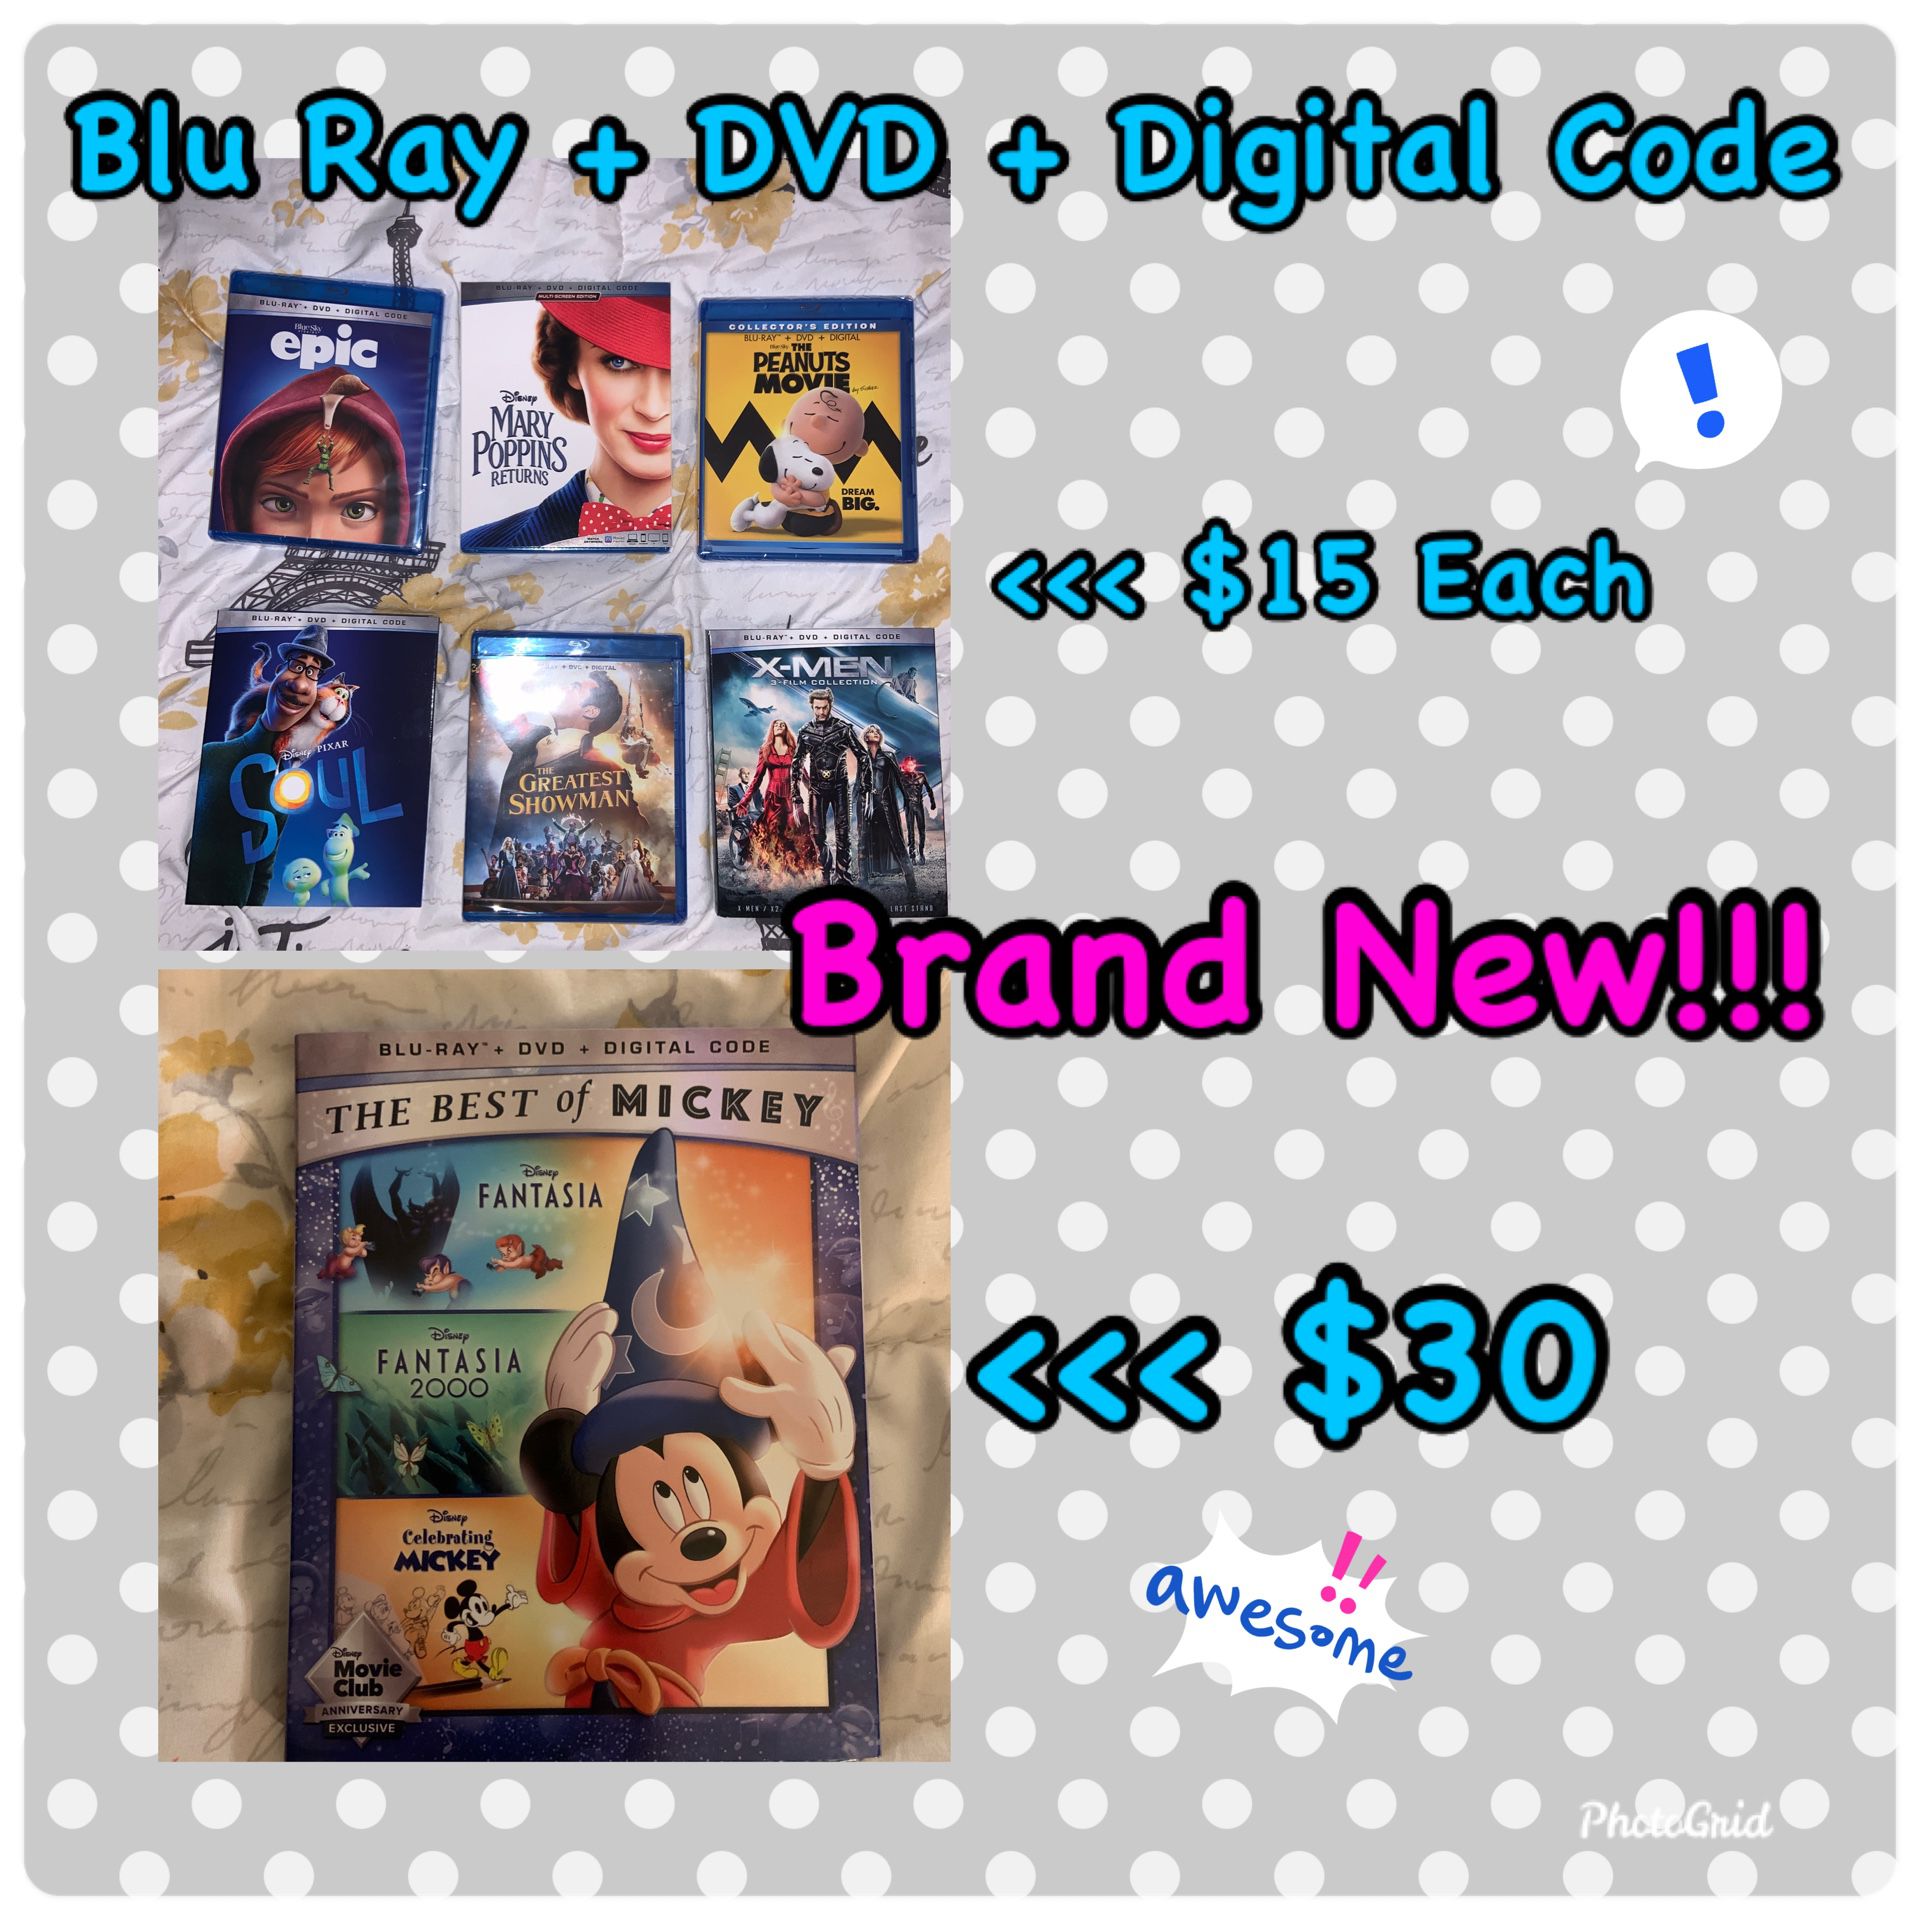 Brand New Disney DVDs